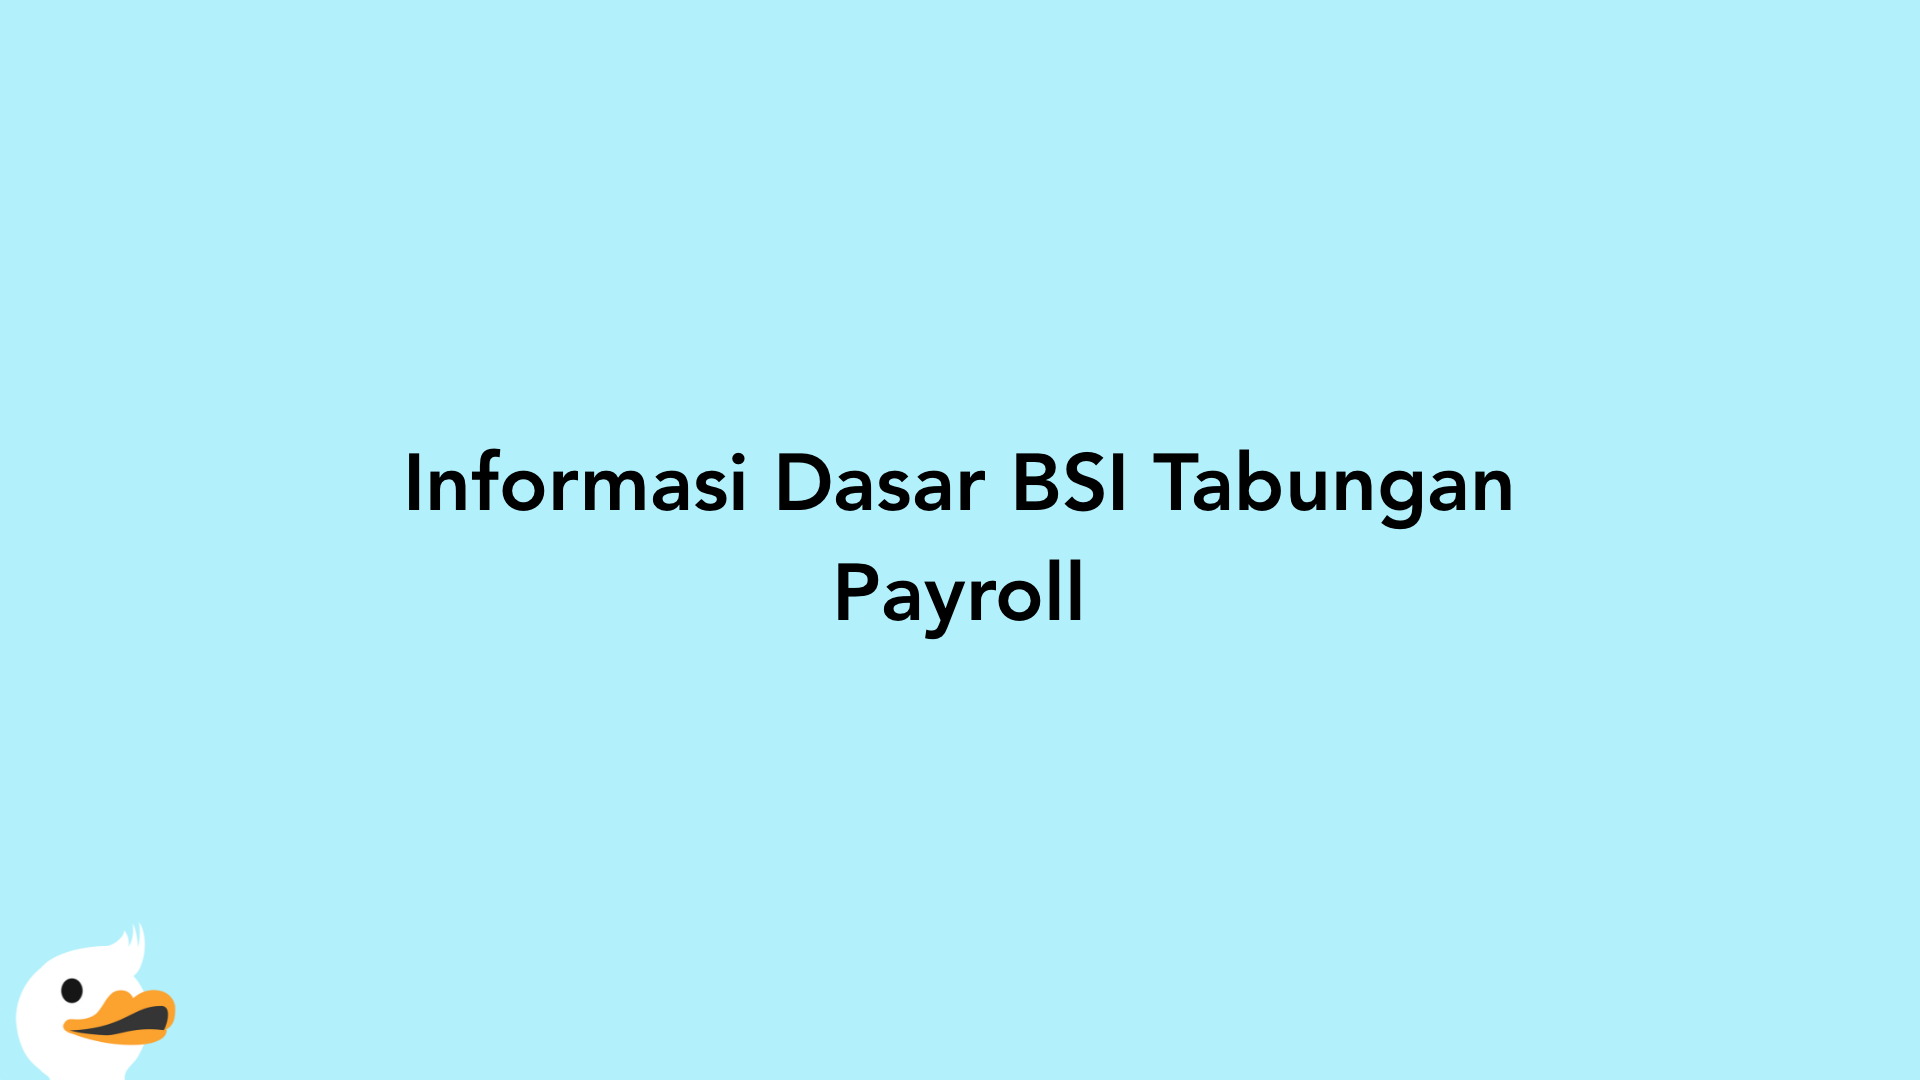 Informasi Dasar BSI Tabungan Payroll